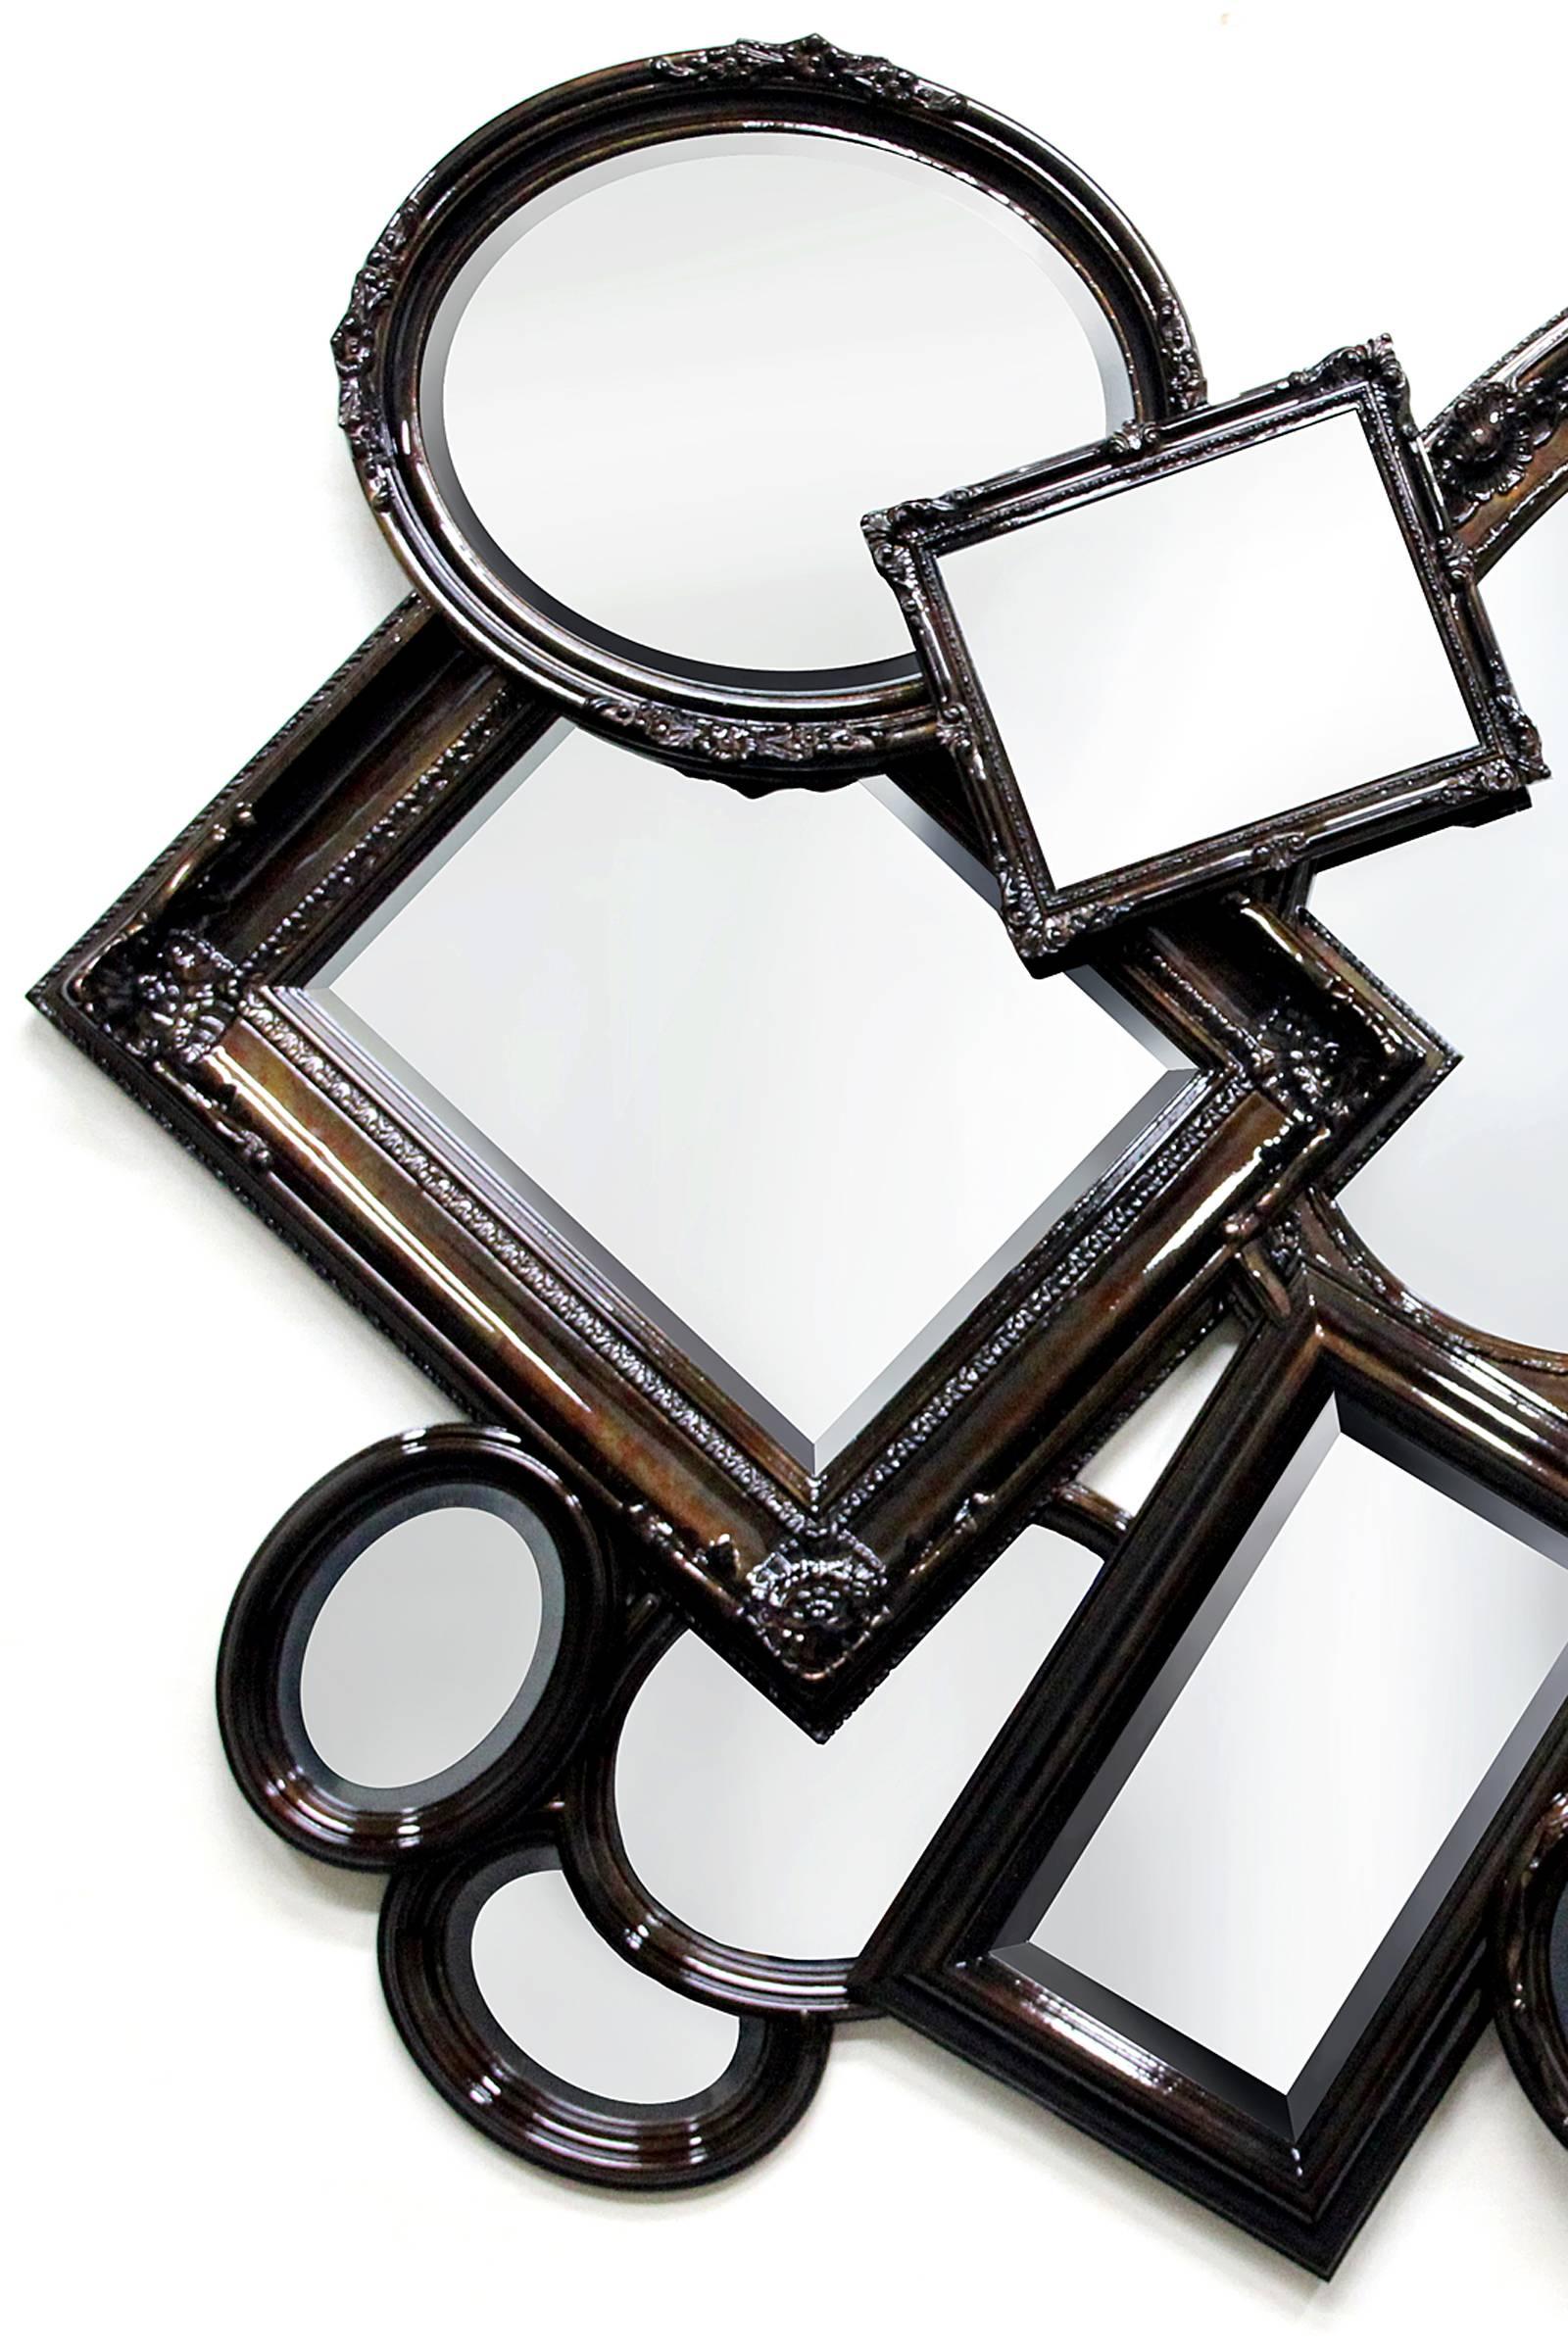 Spiegel mit mehreren Rahmen und 10 klassischen, überlappenden Spiegeln in 
Mahagoni-Massivholz mit verschiedenen Größen und Rahmen verarbeitet 
in Blattkupfer, verrostet in Hochglanz und grauem Spiegel. 
Auch mit Blattgold oder Blattsilber